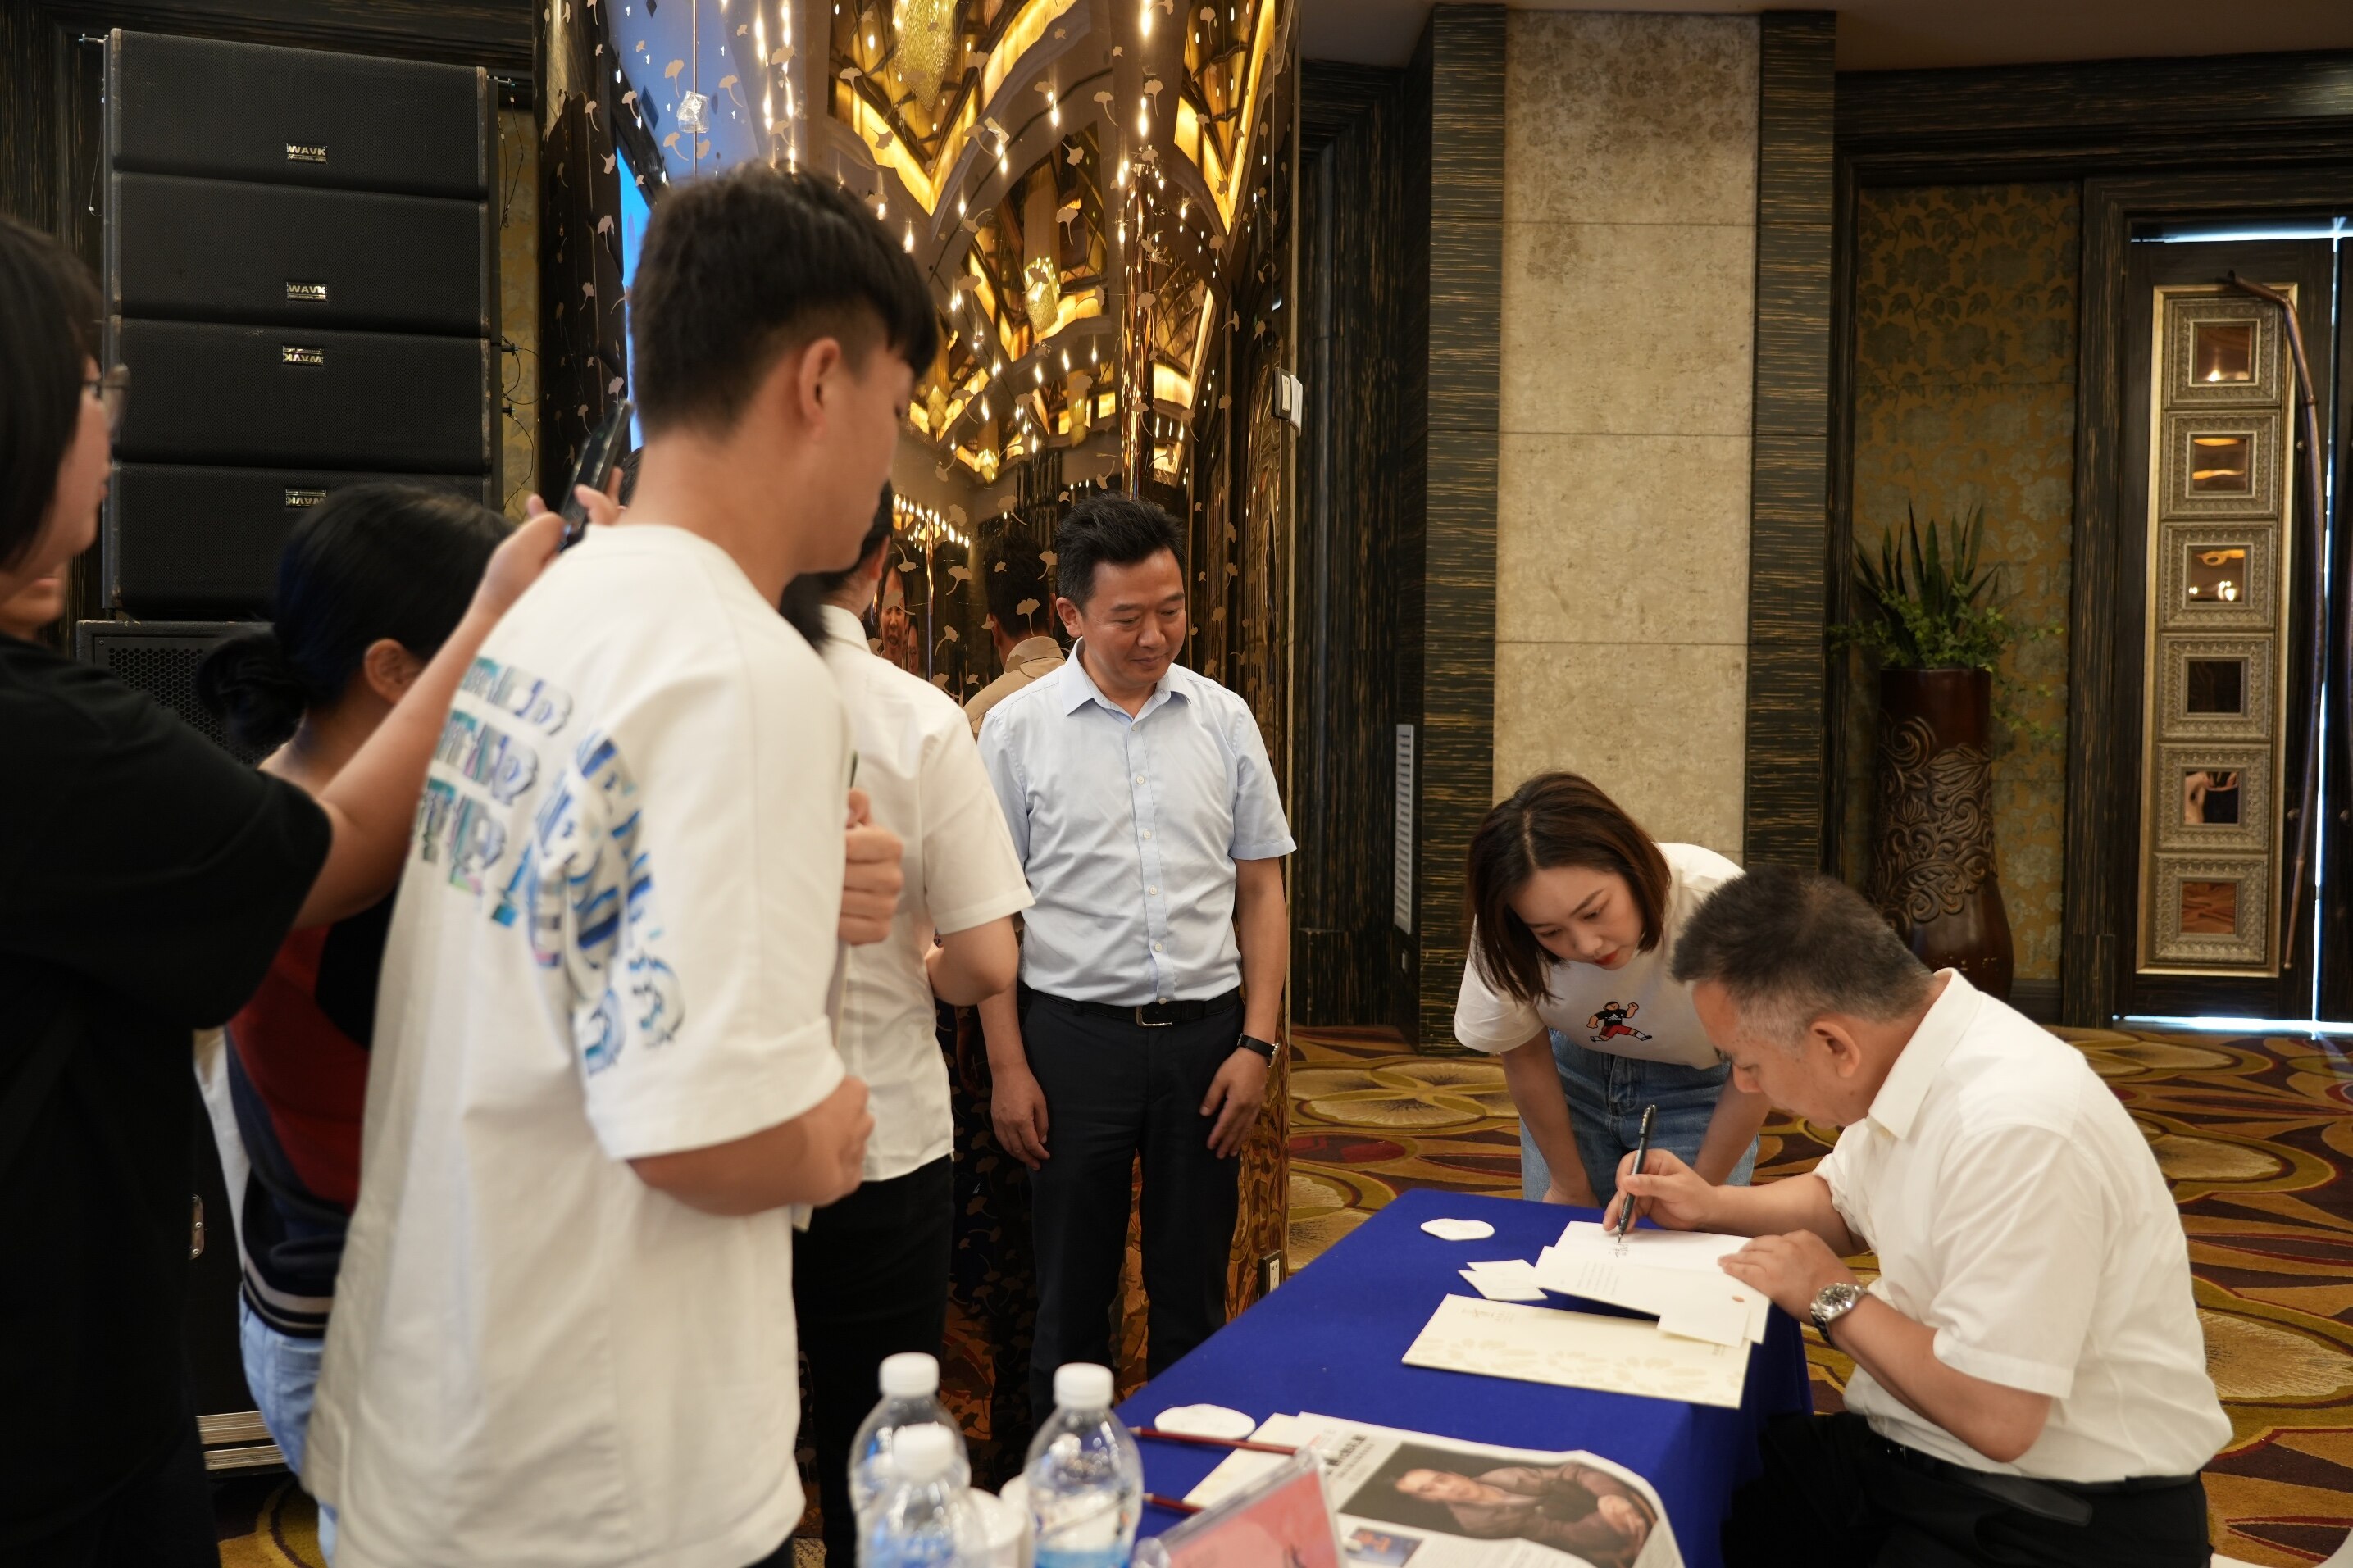 王跃文先生在活动现场为读者朋友签赠新书《家山》。